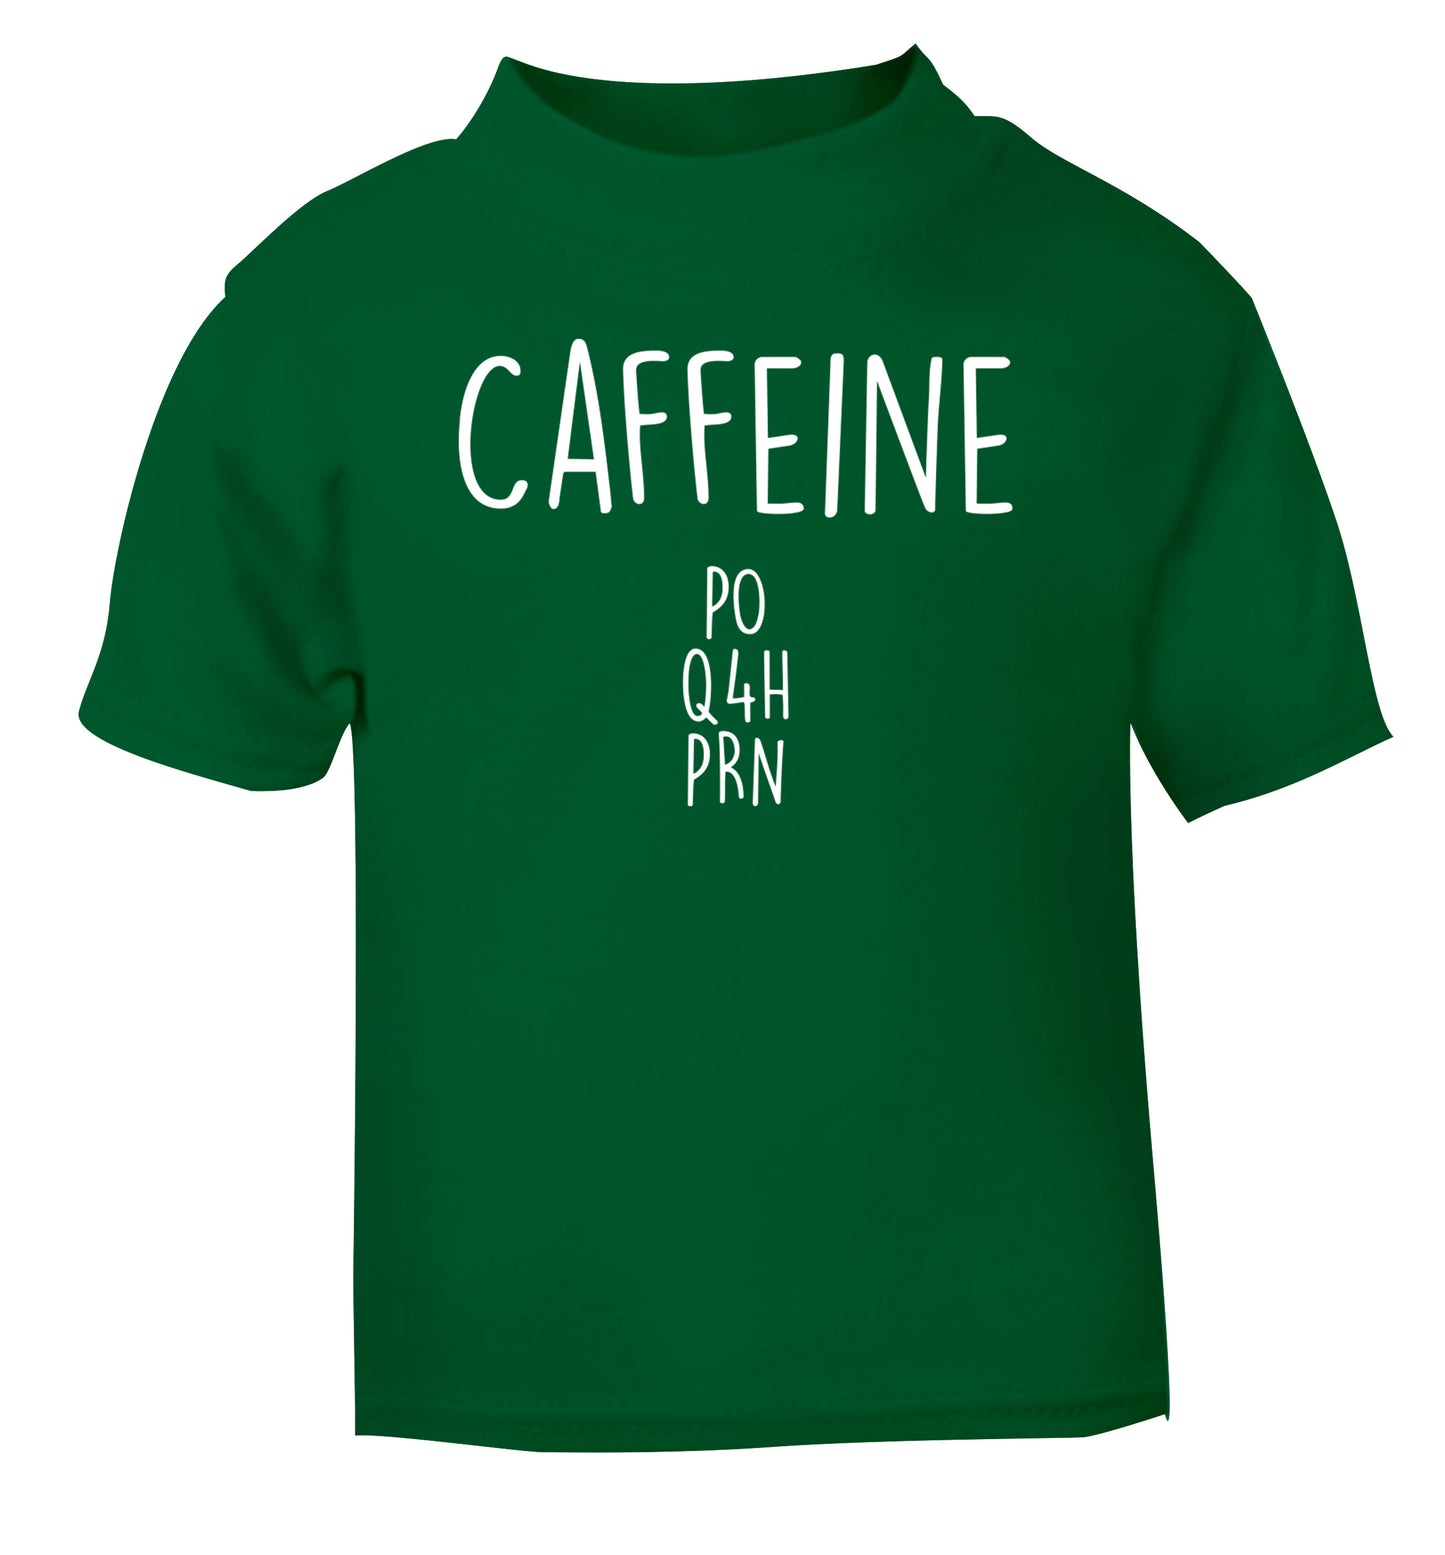 Caffeine PO Q4H PRN green Baby Toddler Tshirt 2 Years